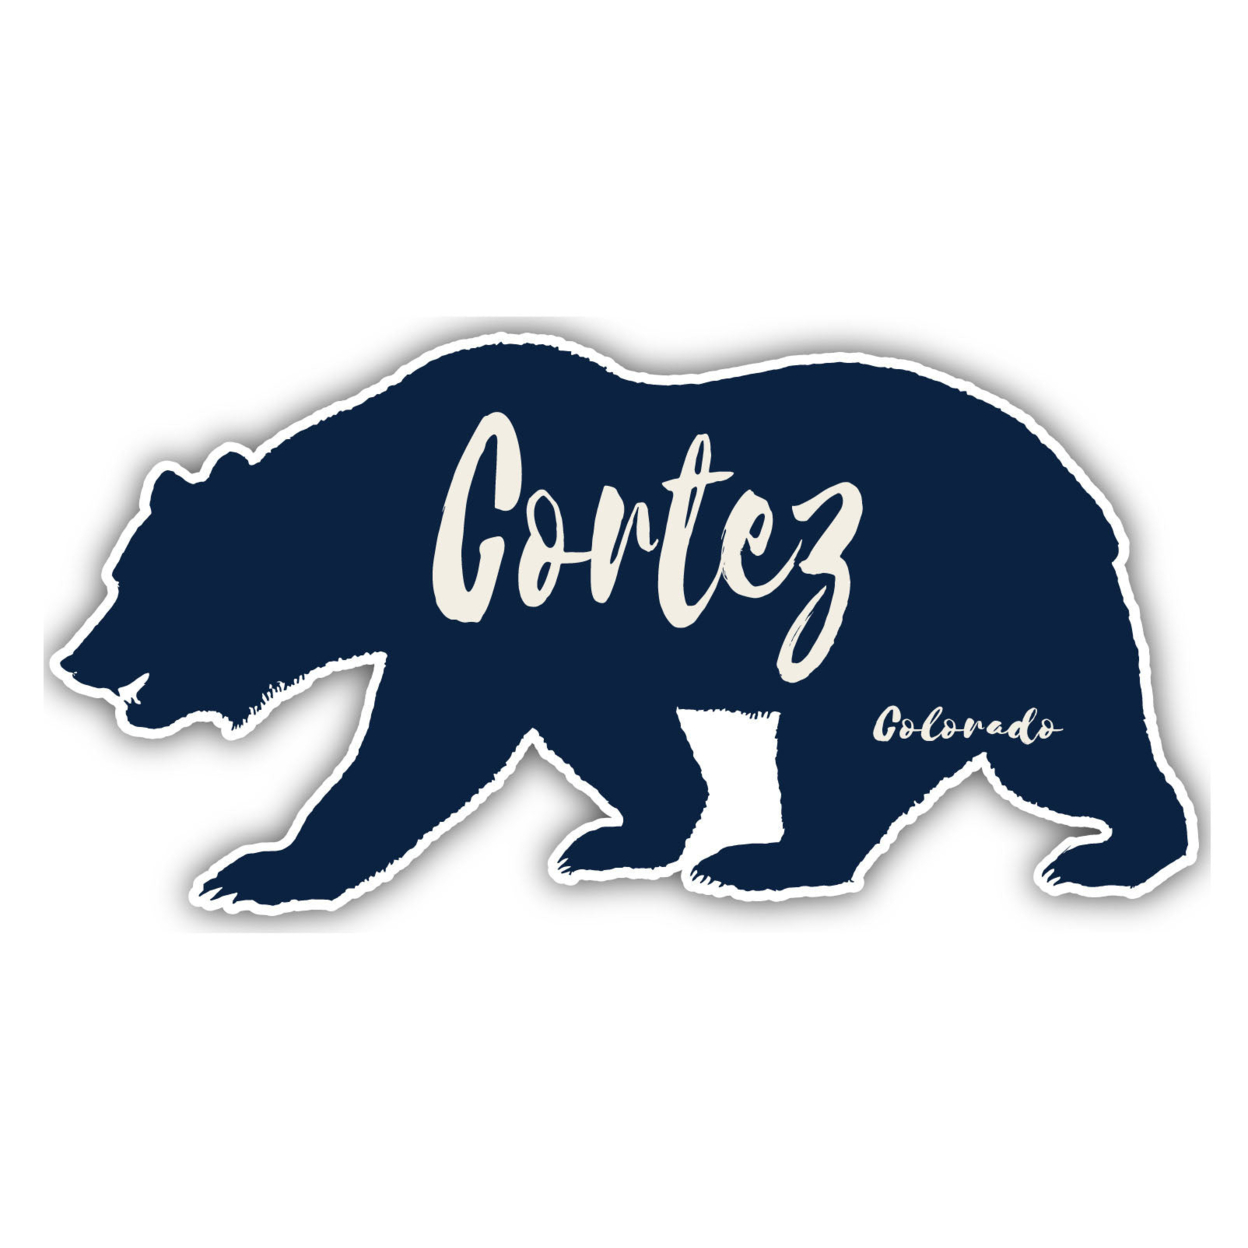 Cortez Colorado Souvenir Decorative Stickers (Choose Theme And Size) - Single Unit, 2-Inch, Tent